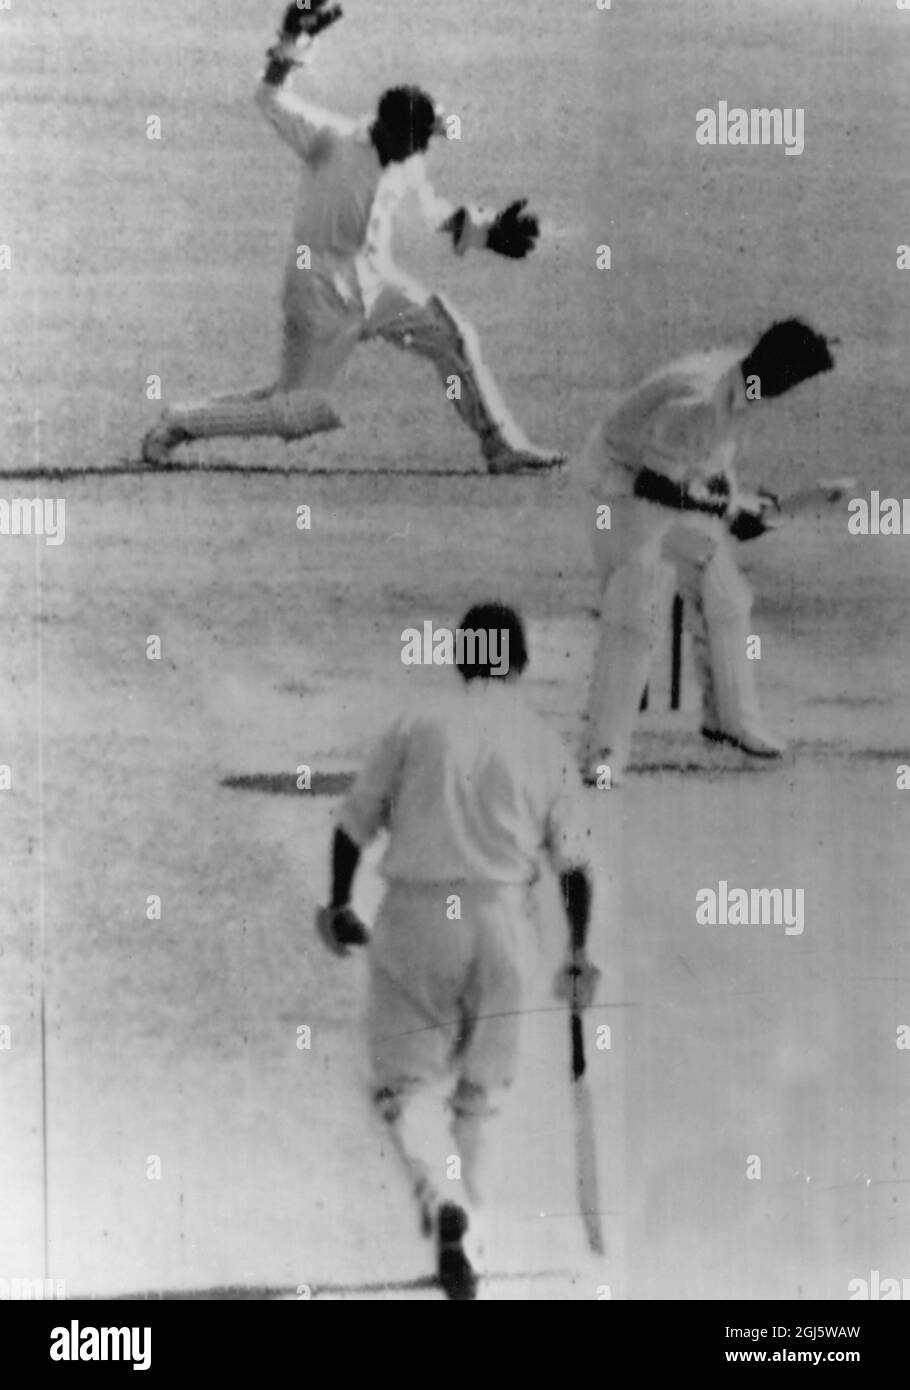 Un tireur de l'australien Bowler Meckiff skid passé devant le batteur anglais Trevor Bailey le joueur de cricket de l'Essex et de l'Angleterre vient d'être arrêté par le gardien de cricket australien Grit à Brisbane, Australie 1958 Banque D'Images